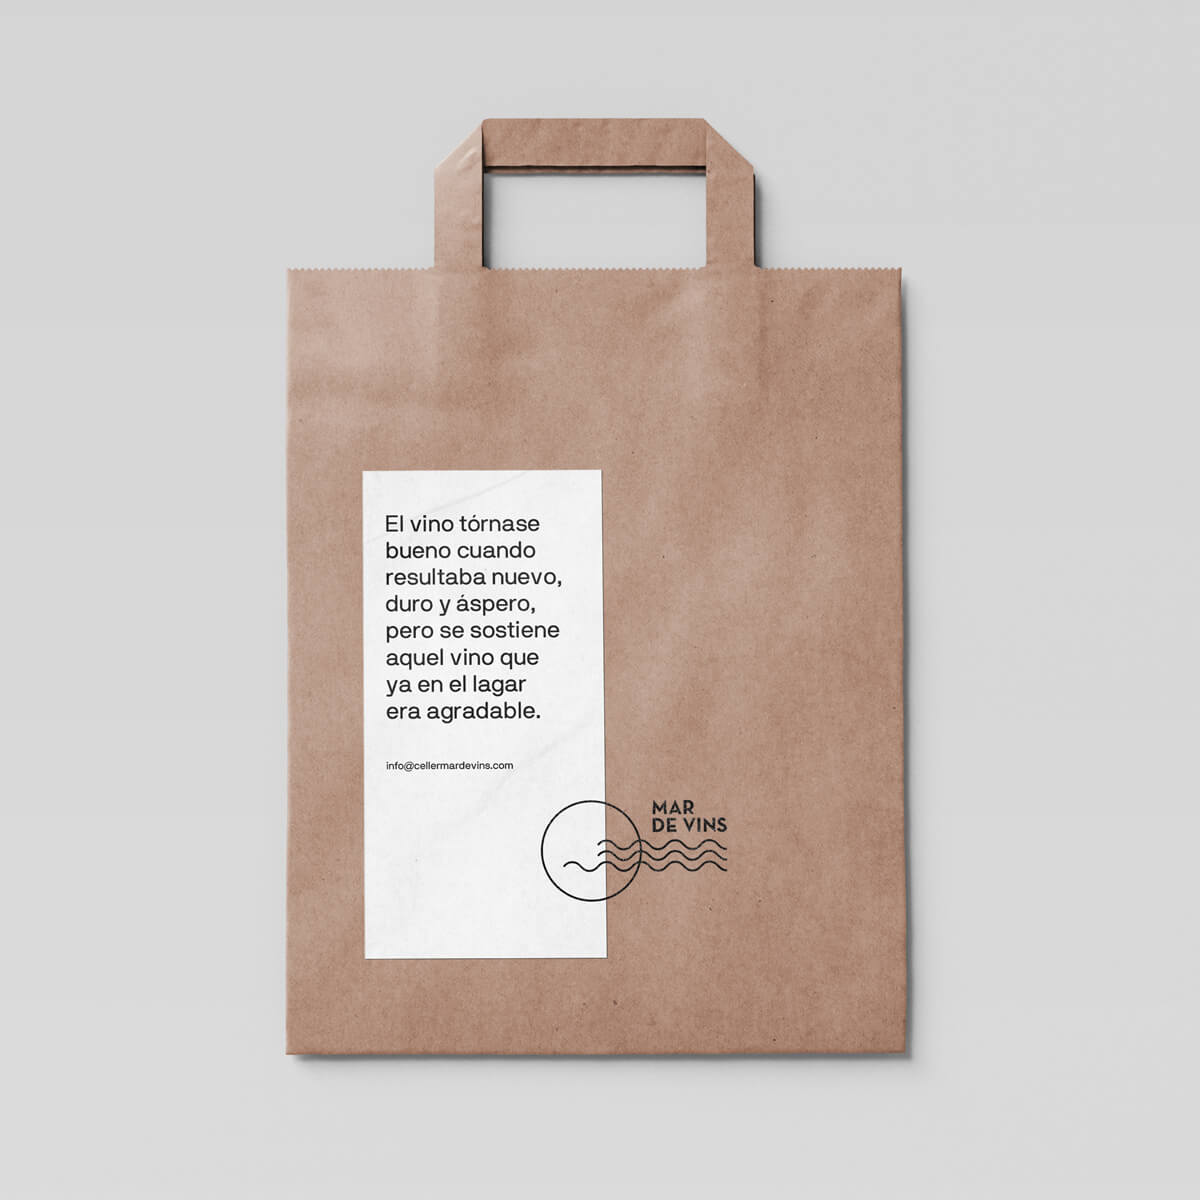 Diseño y desarrollo de identidad visual corporativa para Celler Mar de Vins. Diseño de bolsa.